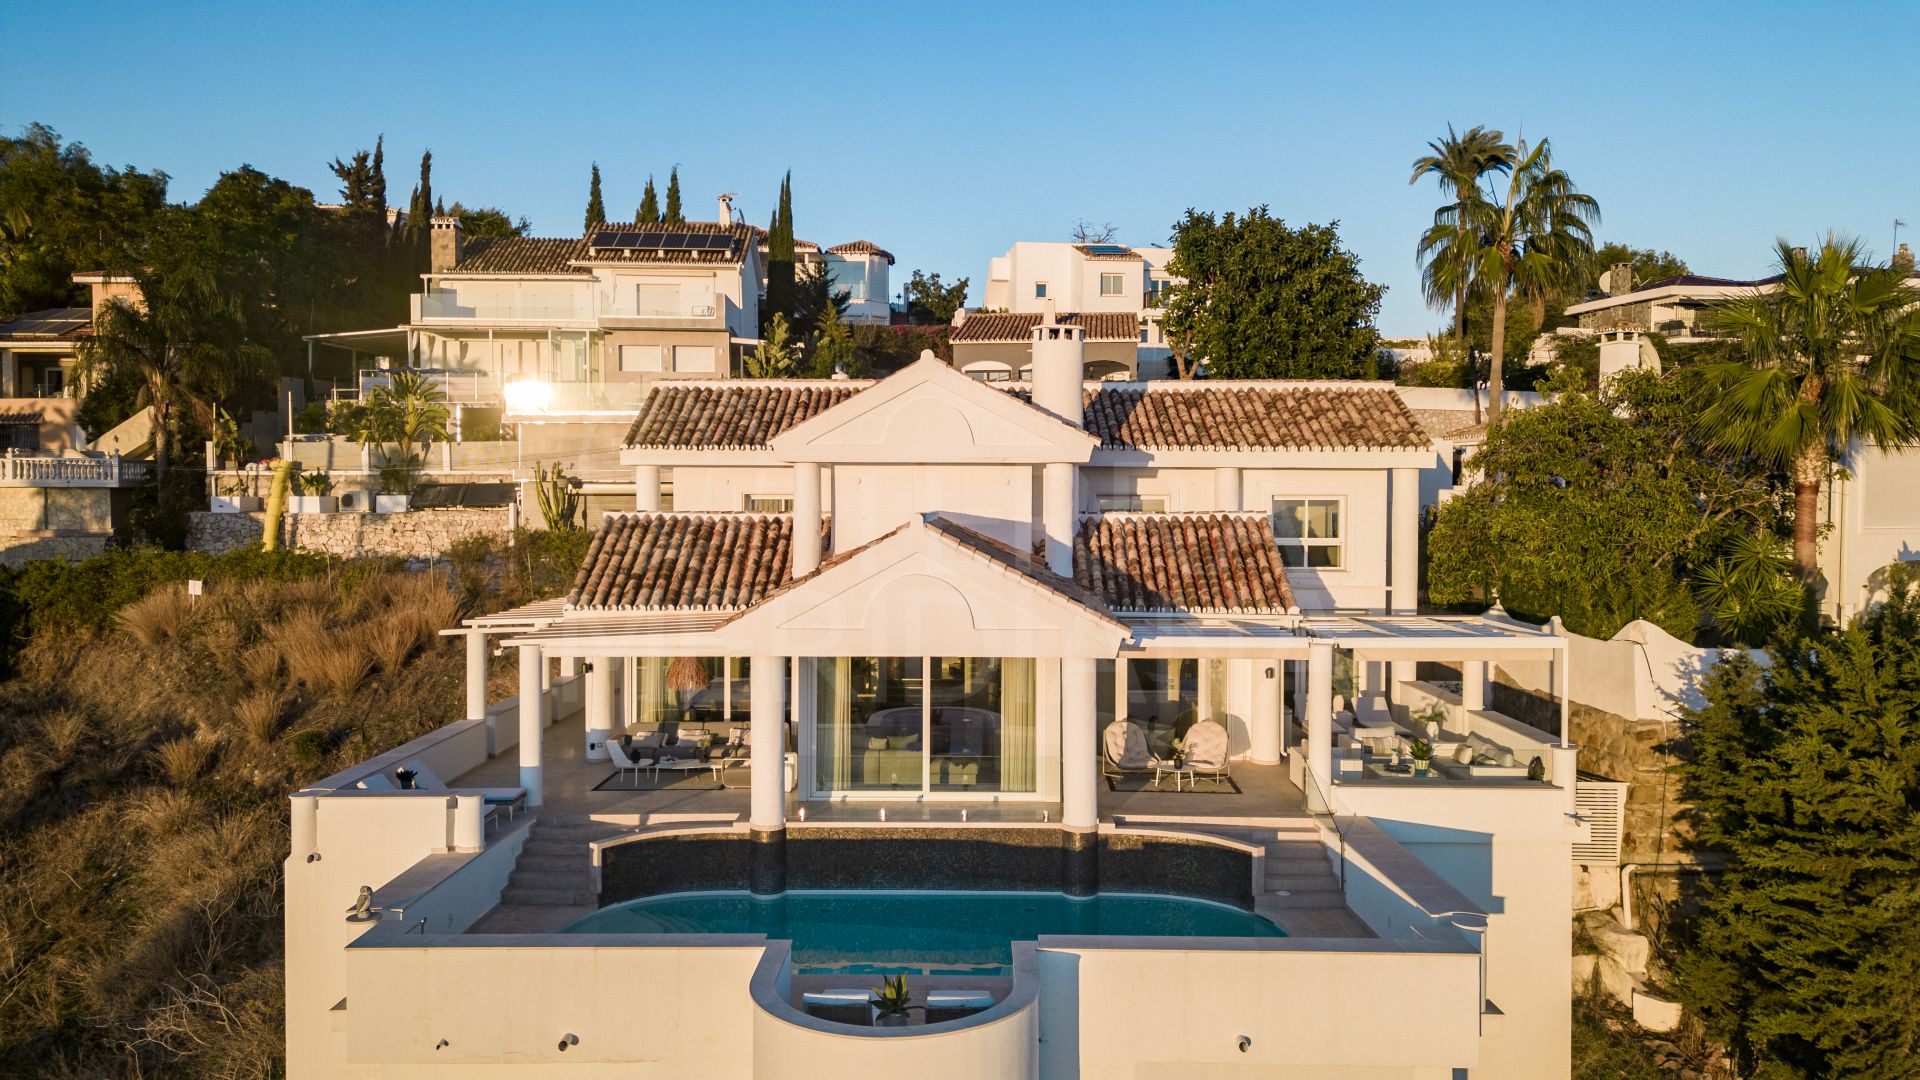 Elegante y espaciosa villa familiar cerca de campos de golf en venta en Nueva Andalucía, Marbella